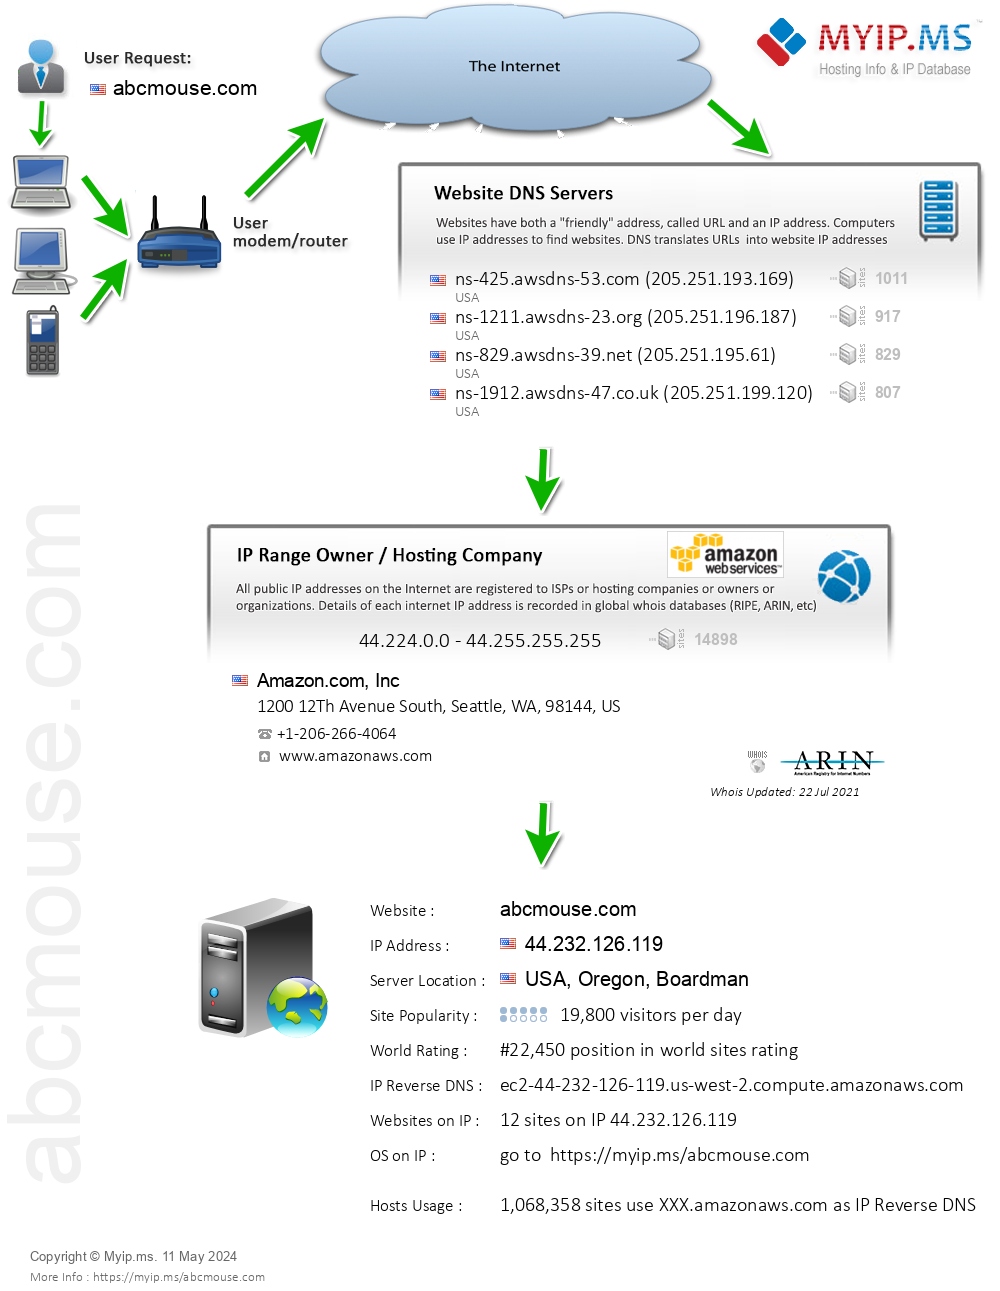 Abcmouse.com - Website Hosting Visual IP Diagram